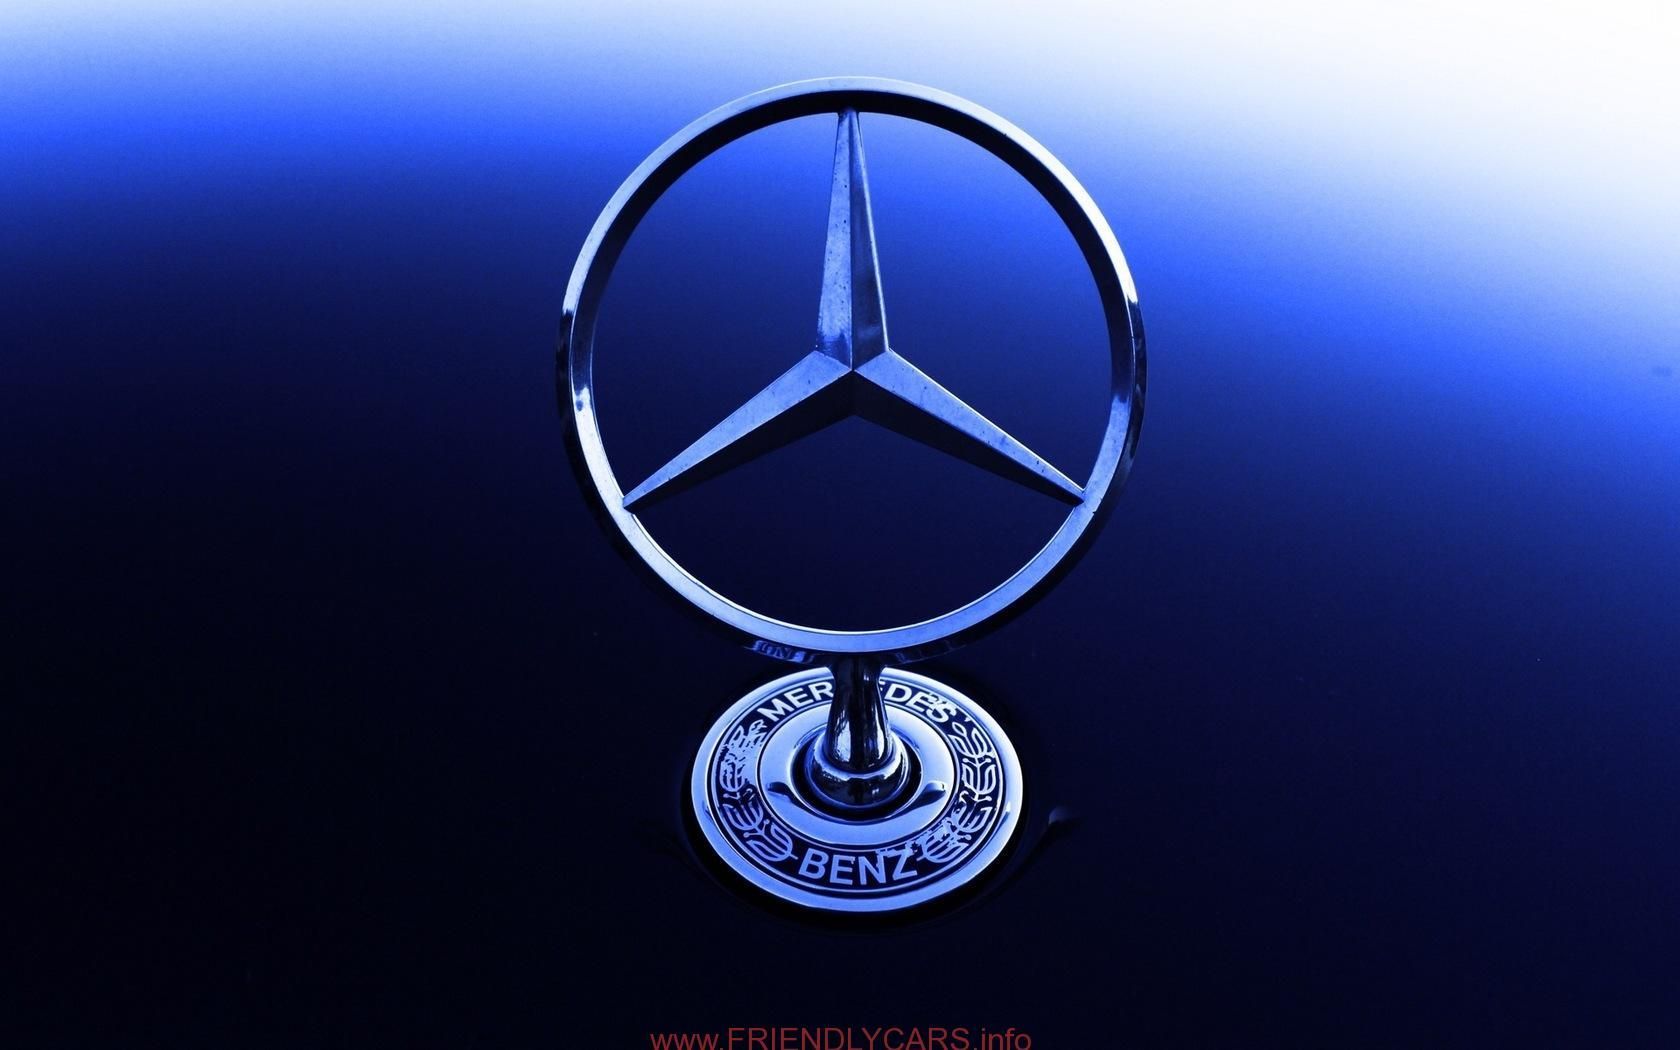 Mercedes Benz HD Wallpaper .in.com